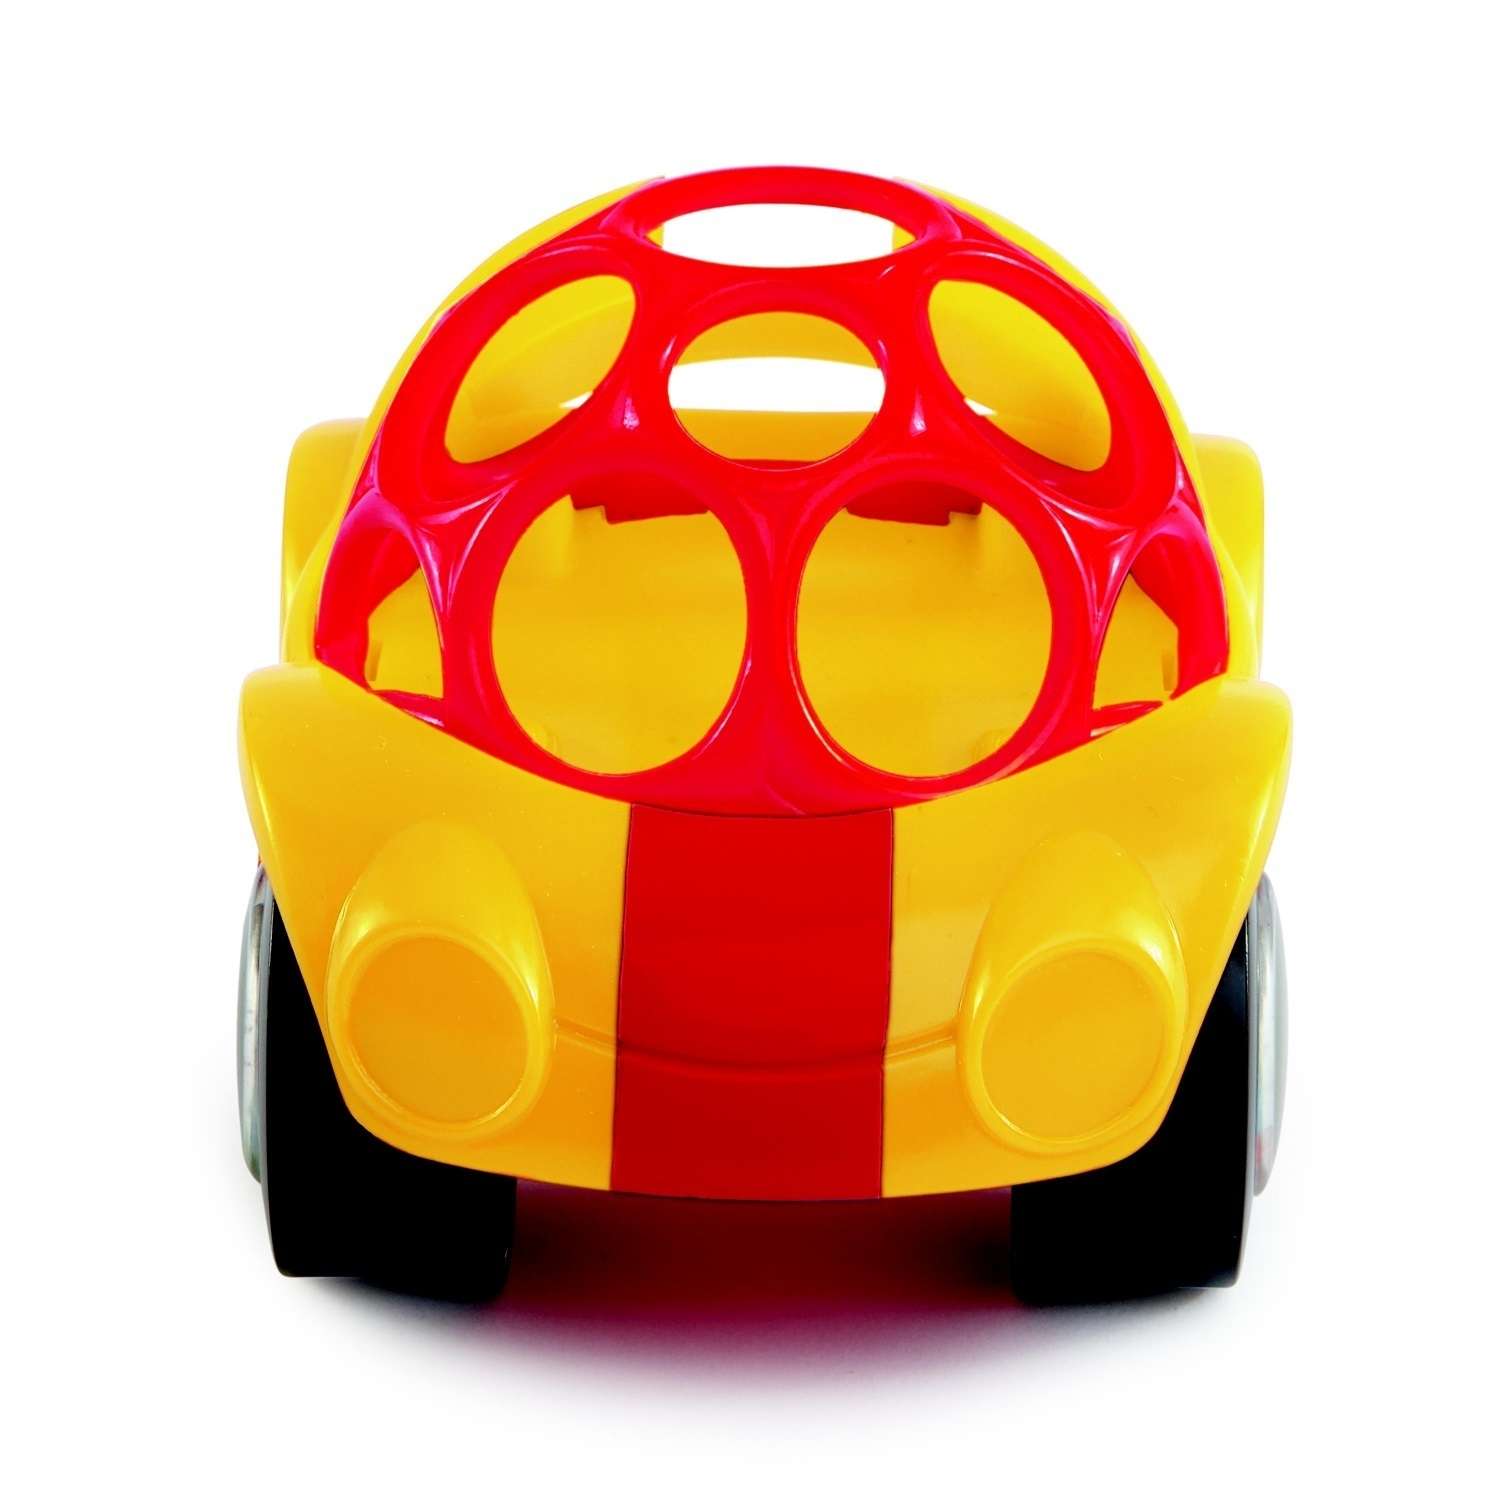 Игрушка развивающая Oball O-ball Машинка Желтая - фото 3